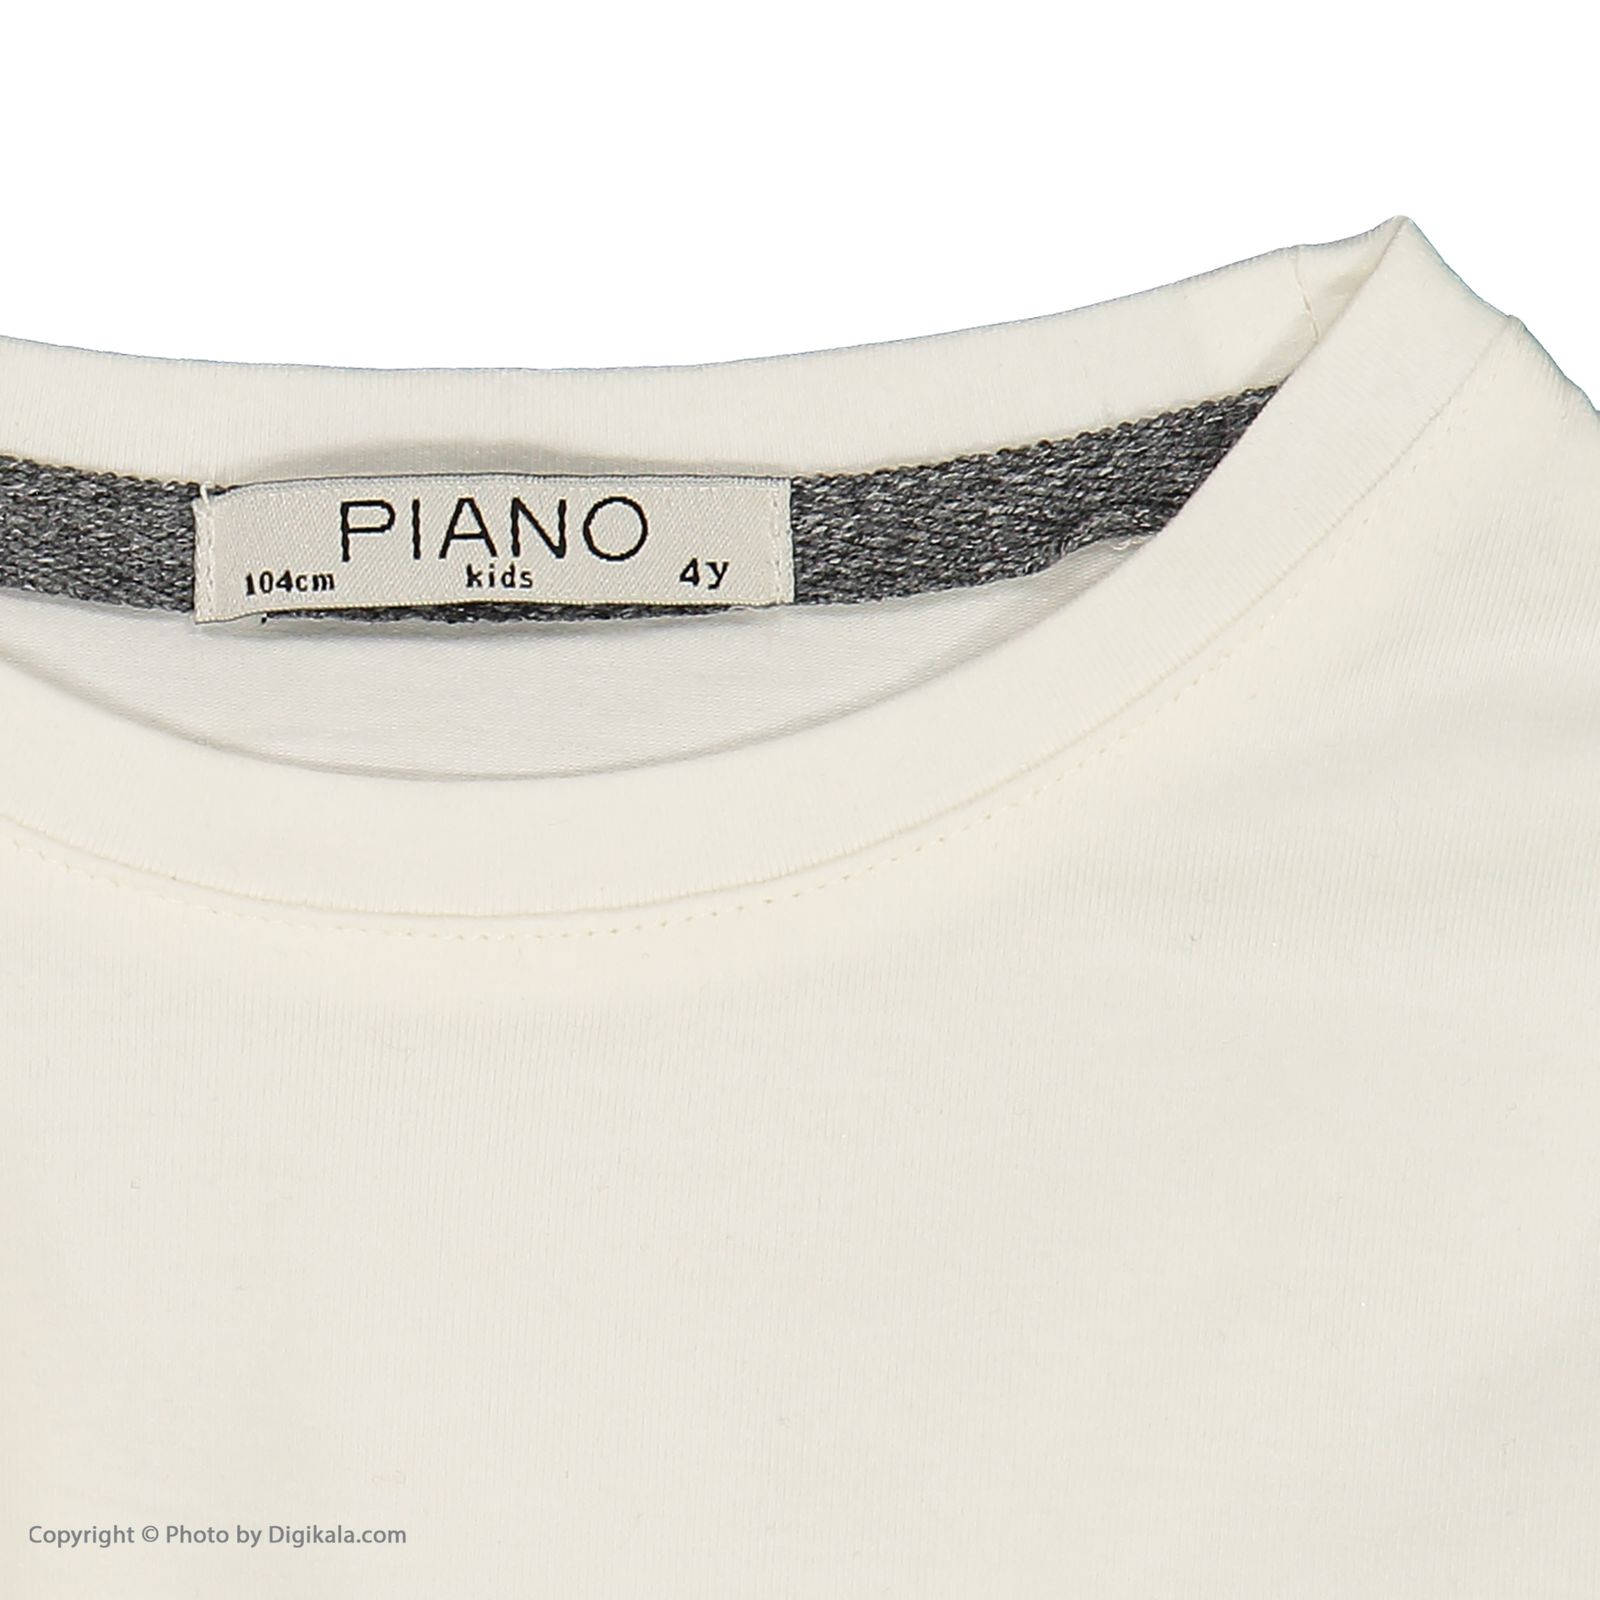 ست تی شرت و سارافون دخترانه پیانو مدل 5611-93 -  - 9